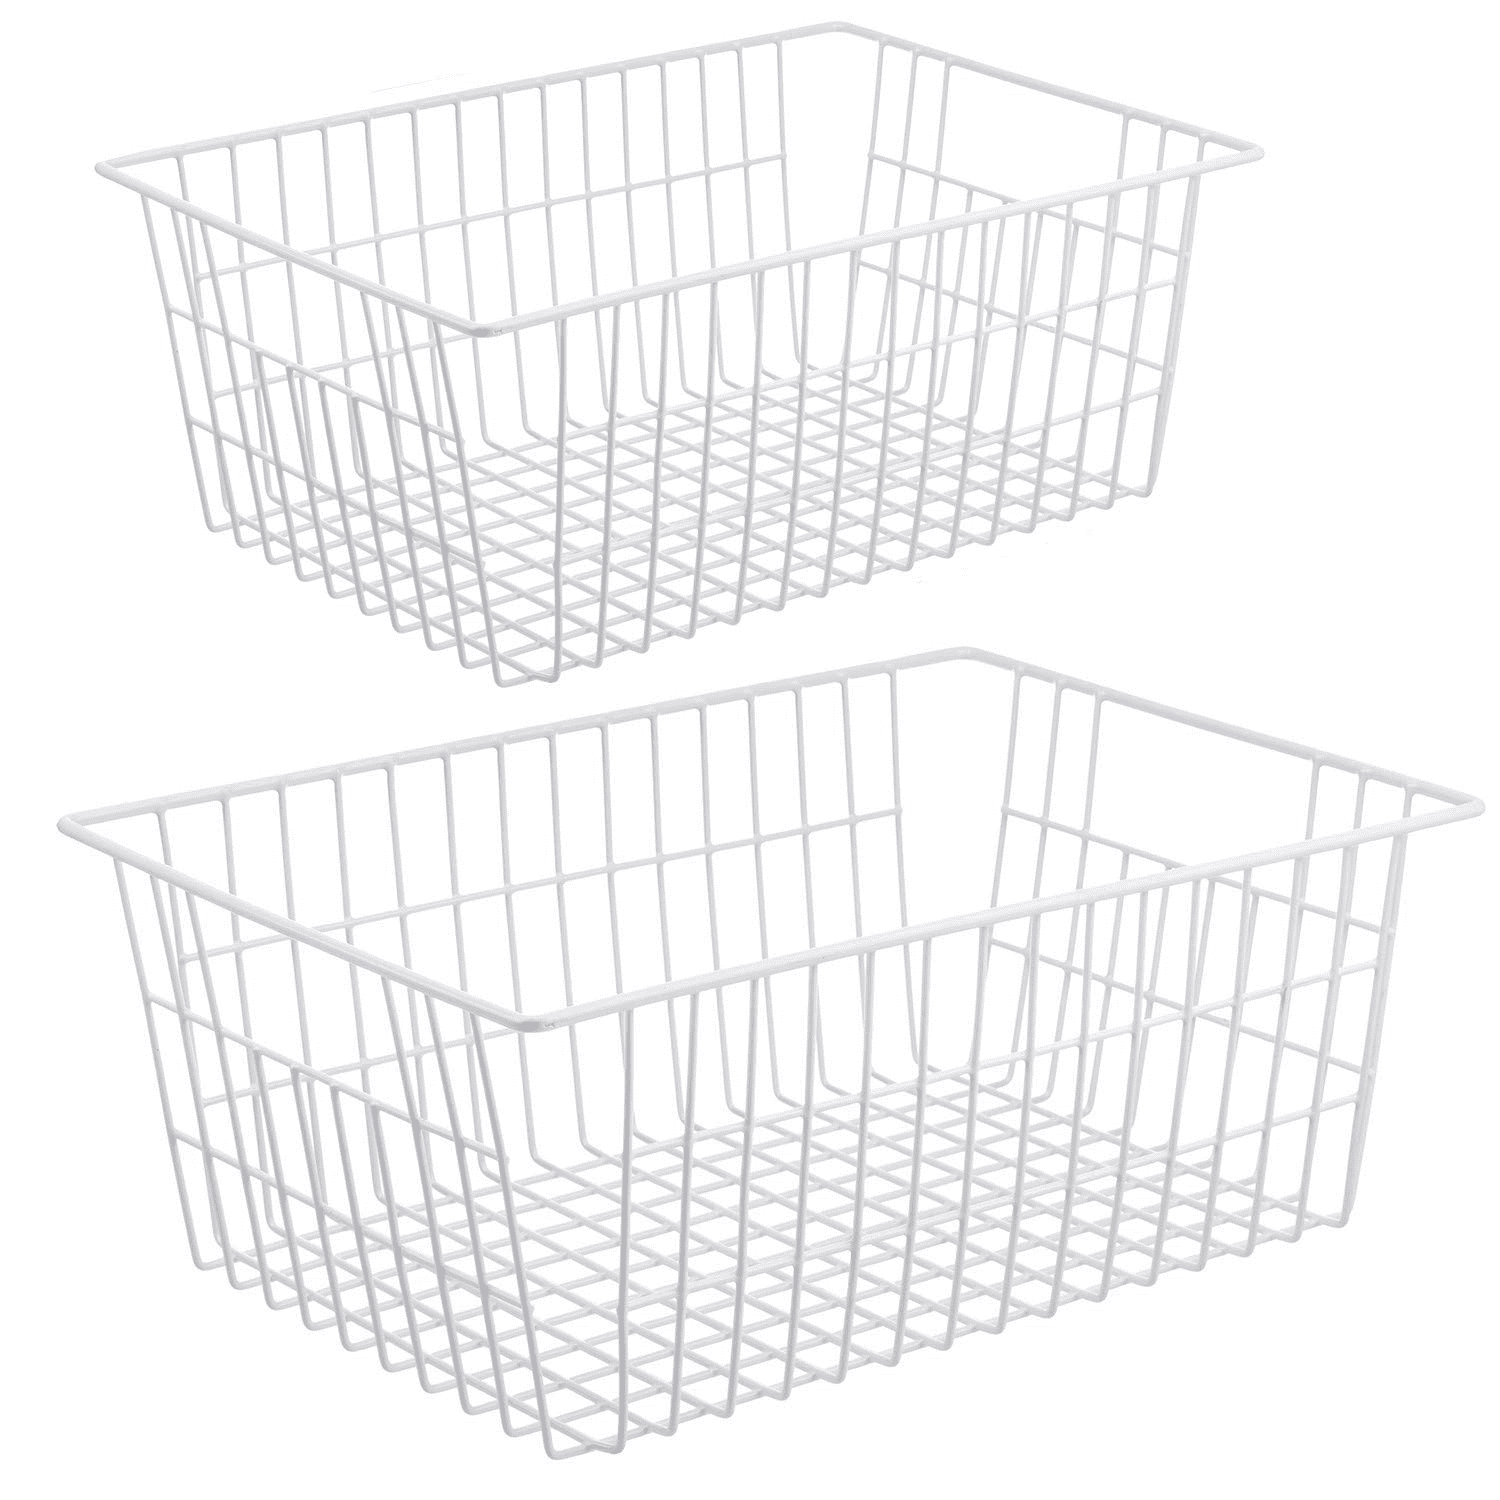 Shop Freezer Wire Basket online